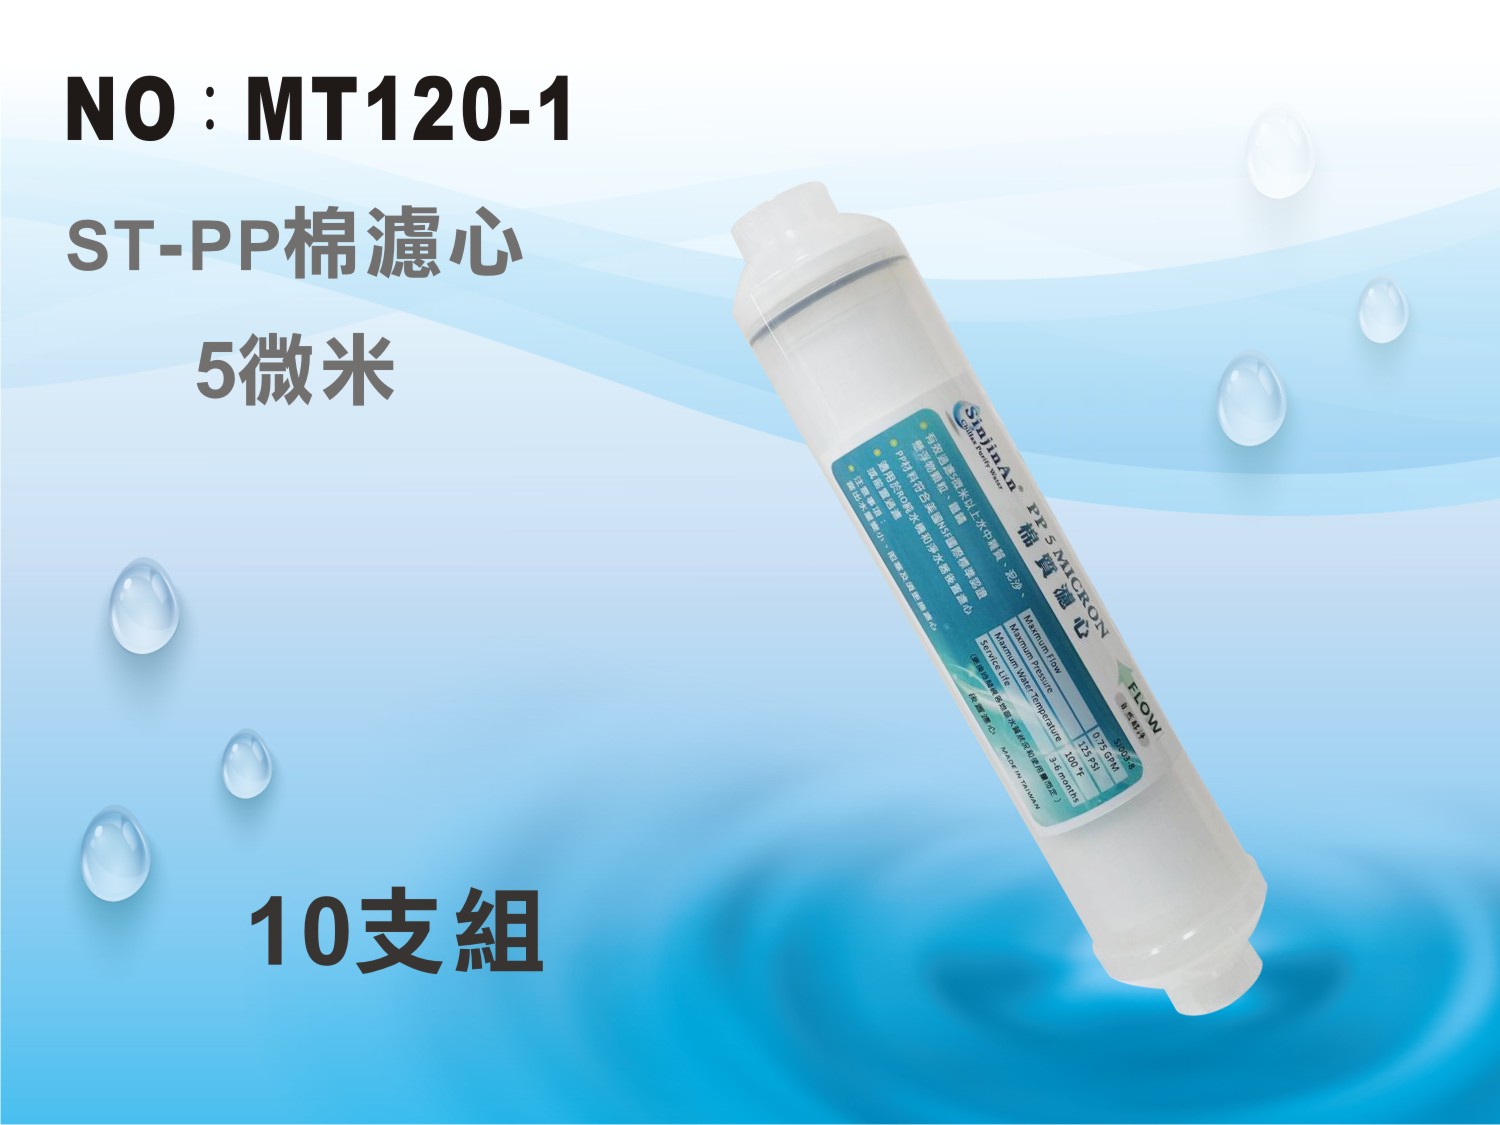 【龍門淨水】ST PP5m綿質濾心 10支 材料NSF認證 後置 RO純水機 淨水器(MT120-1)